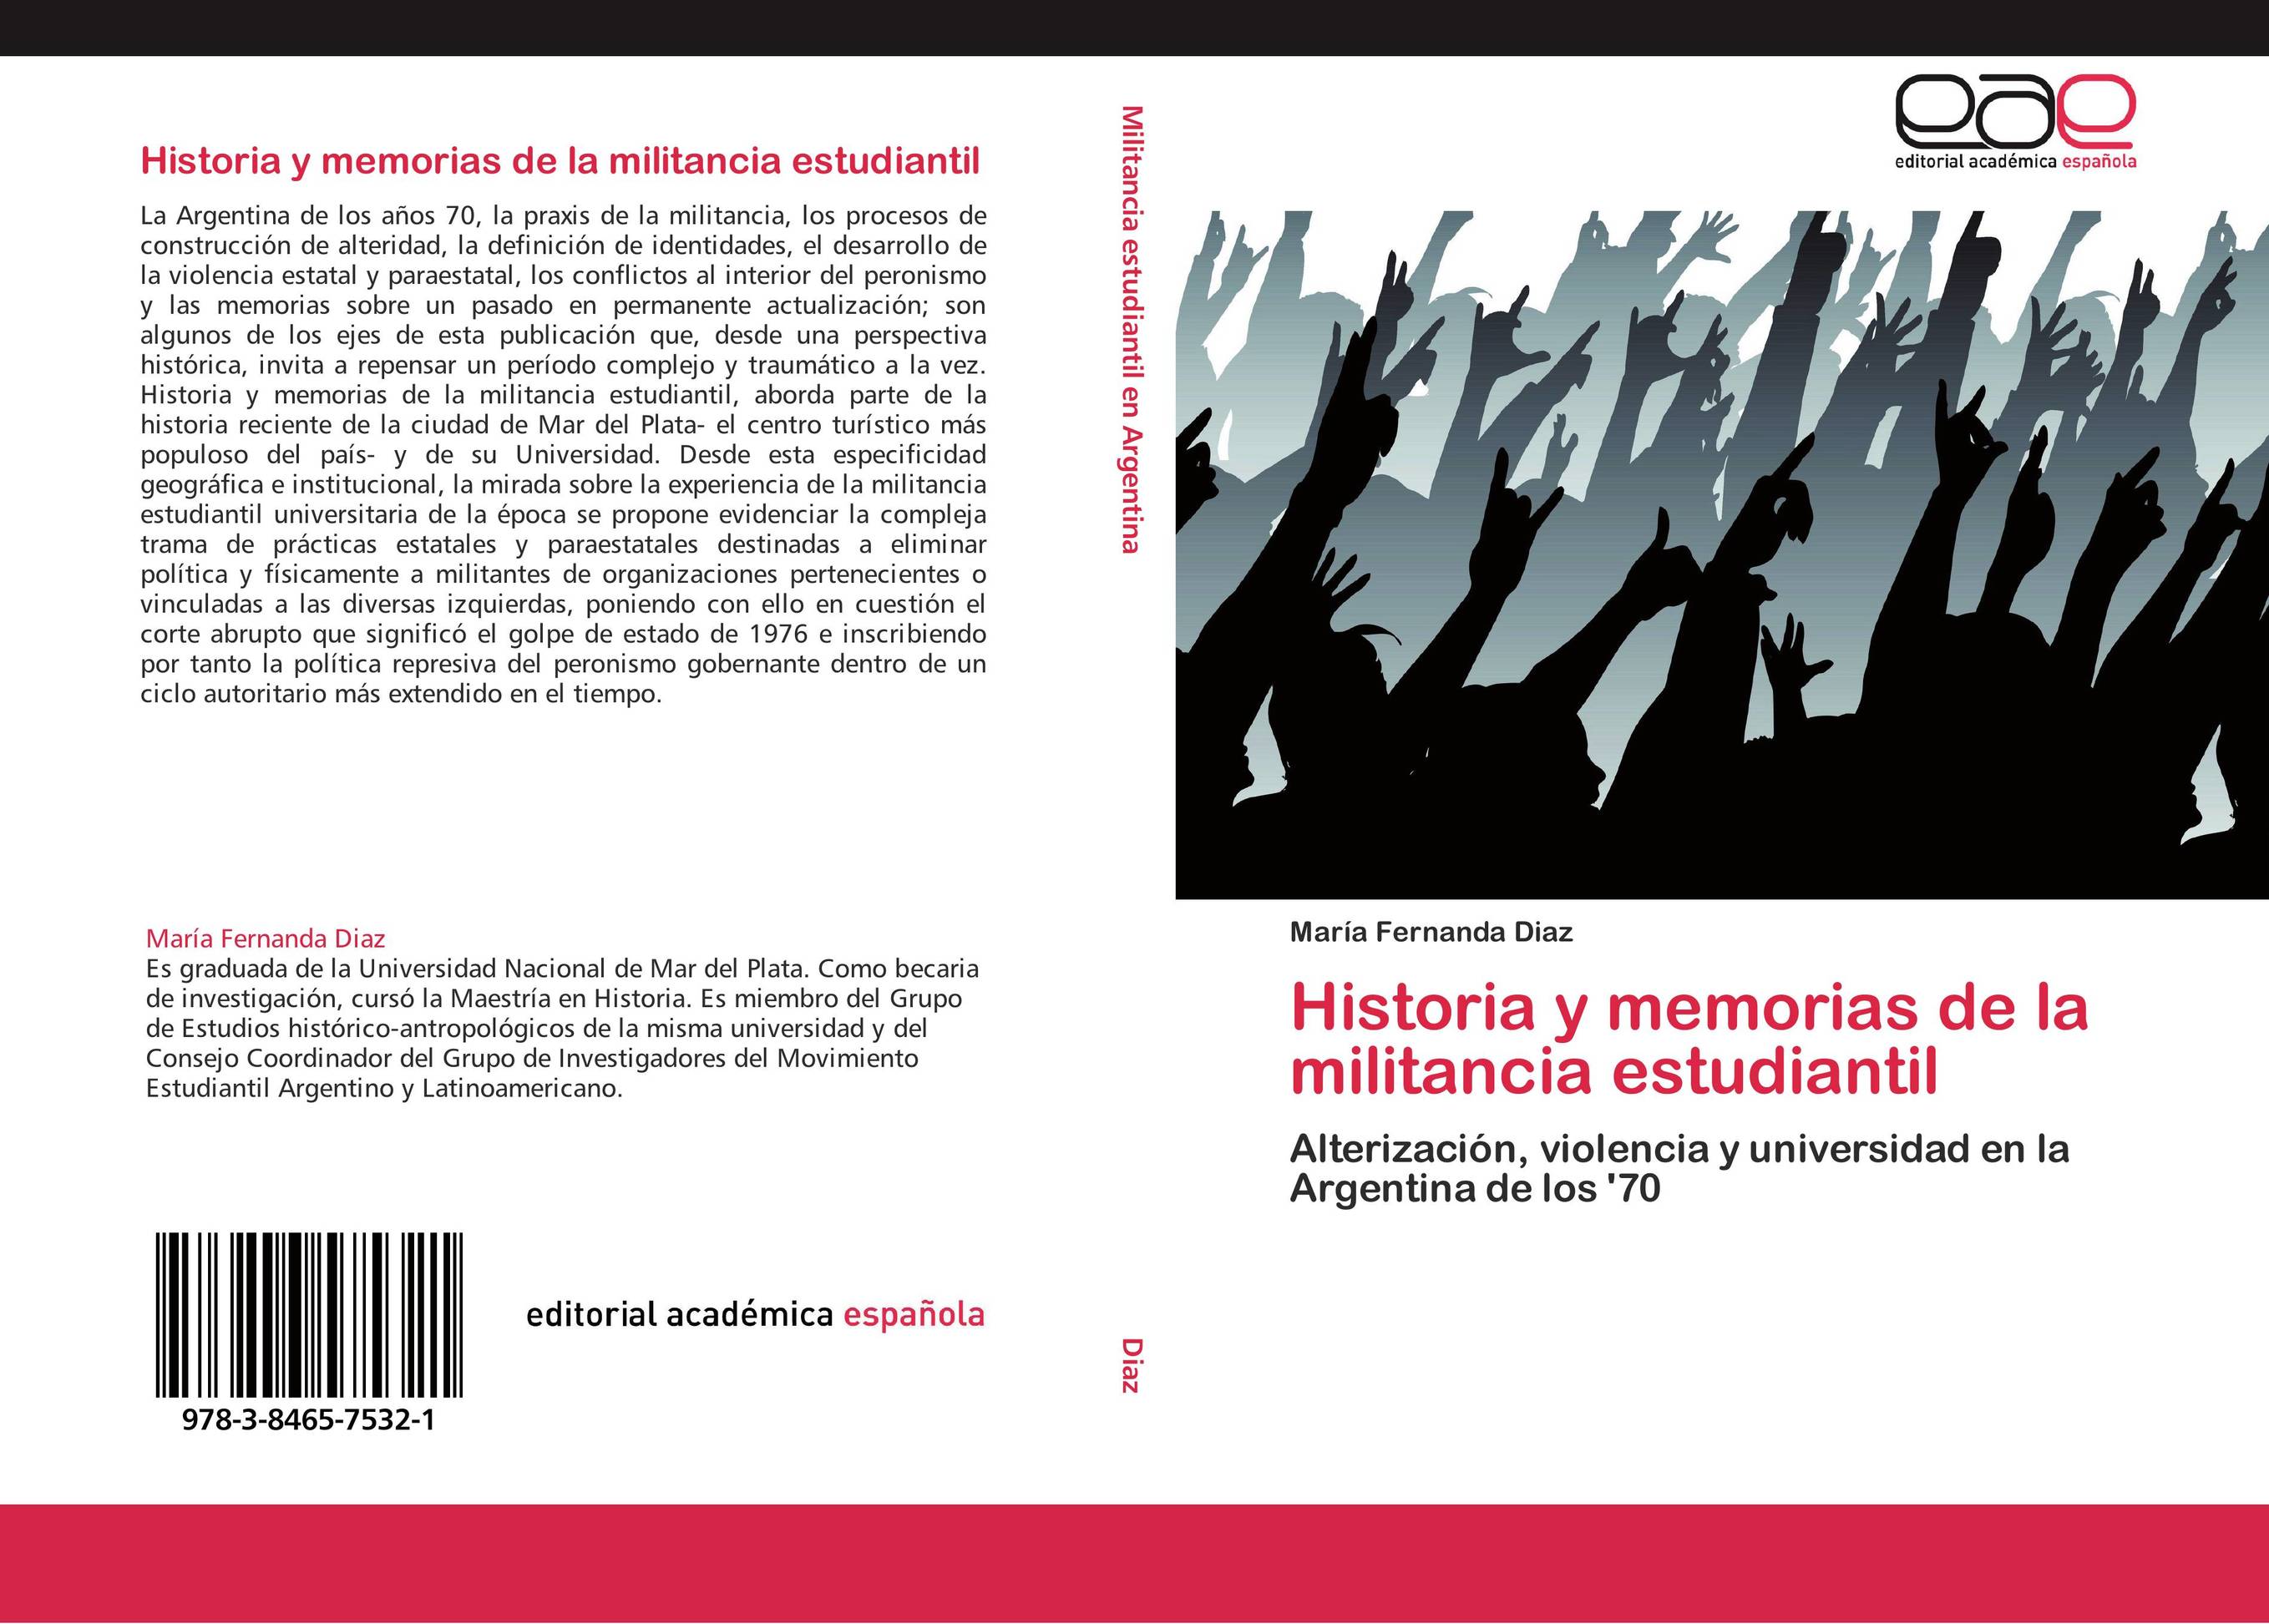 Historia y memorias de la militancia estudiantil